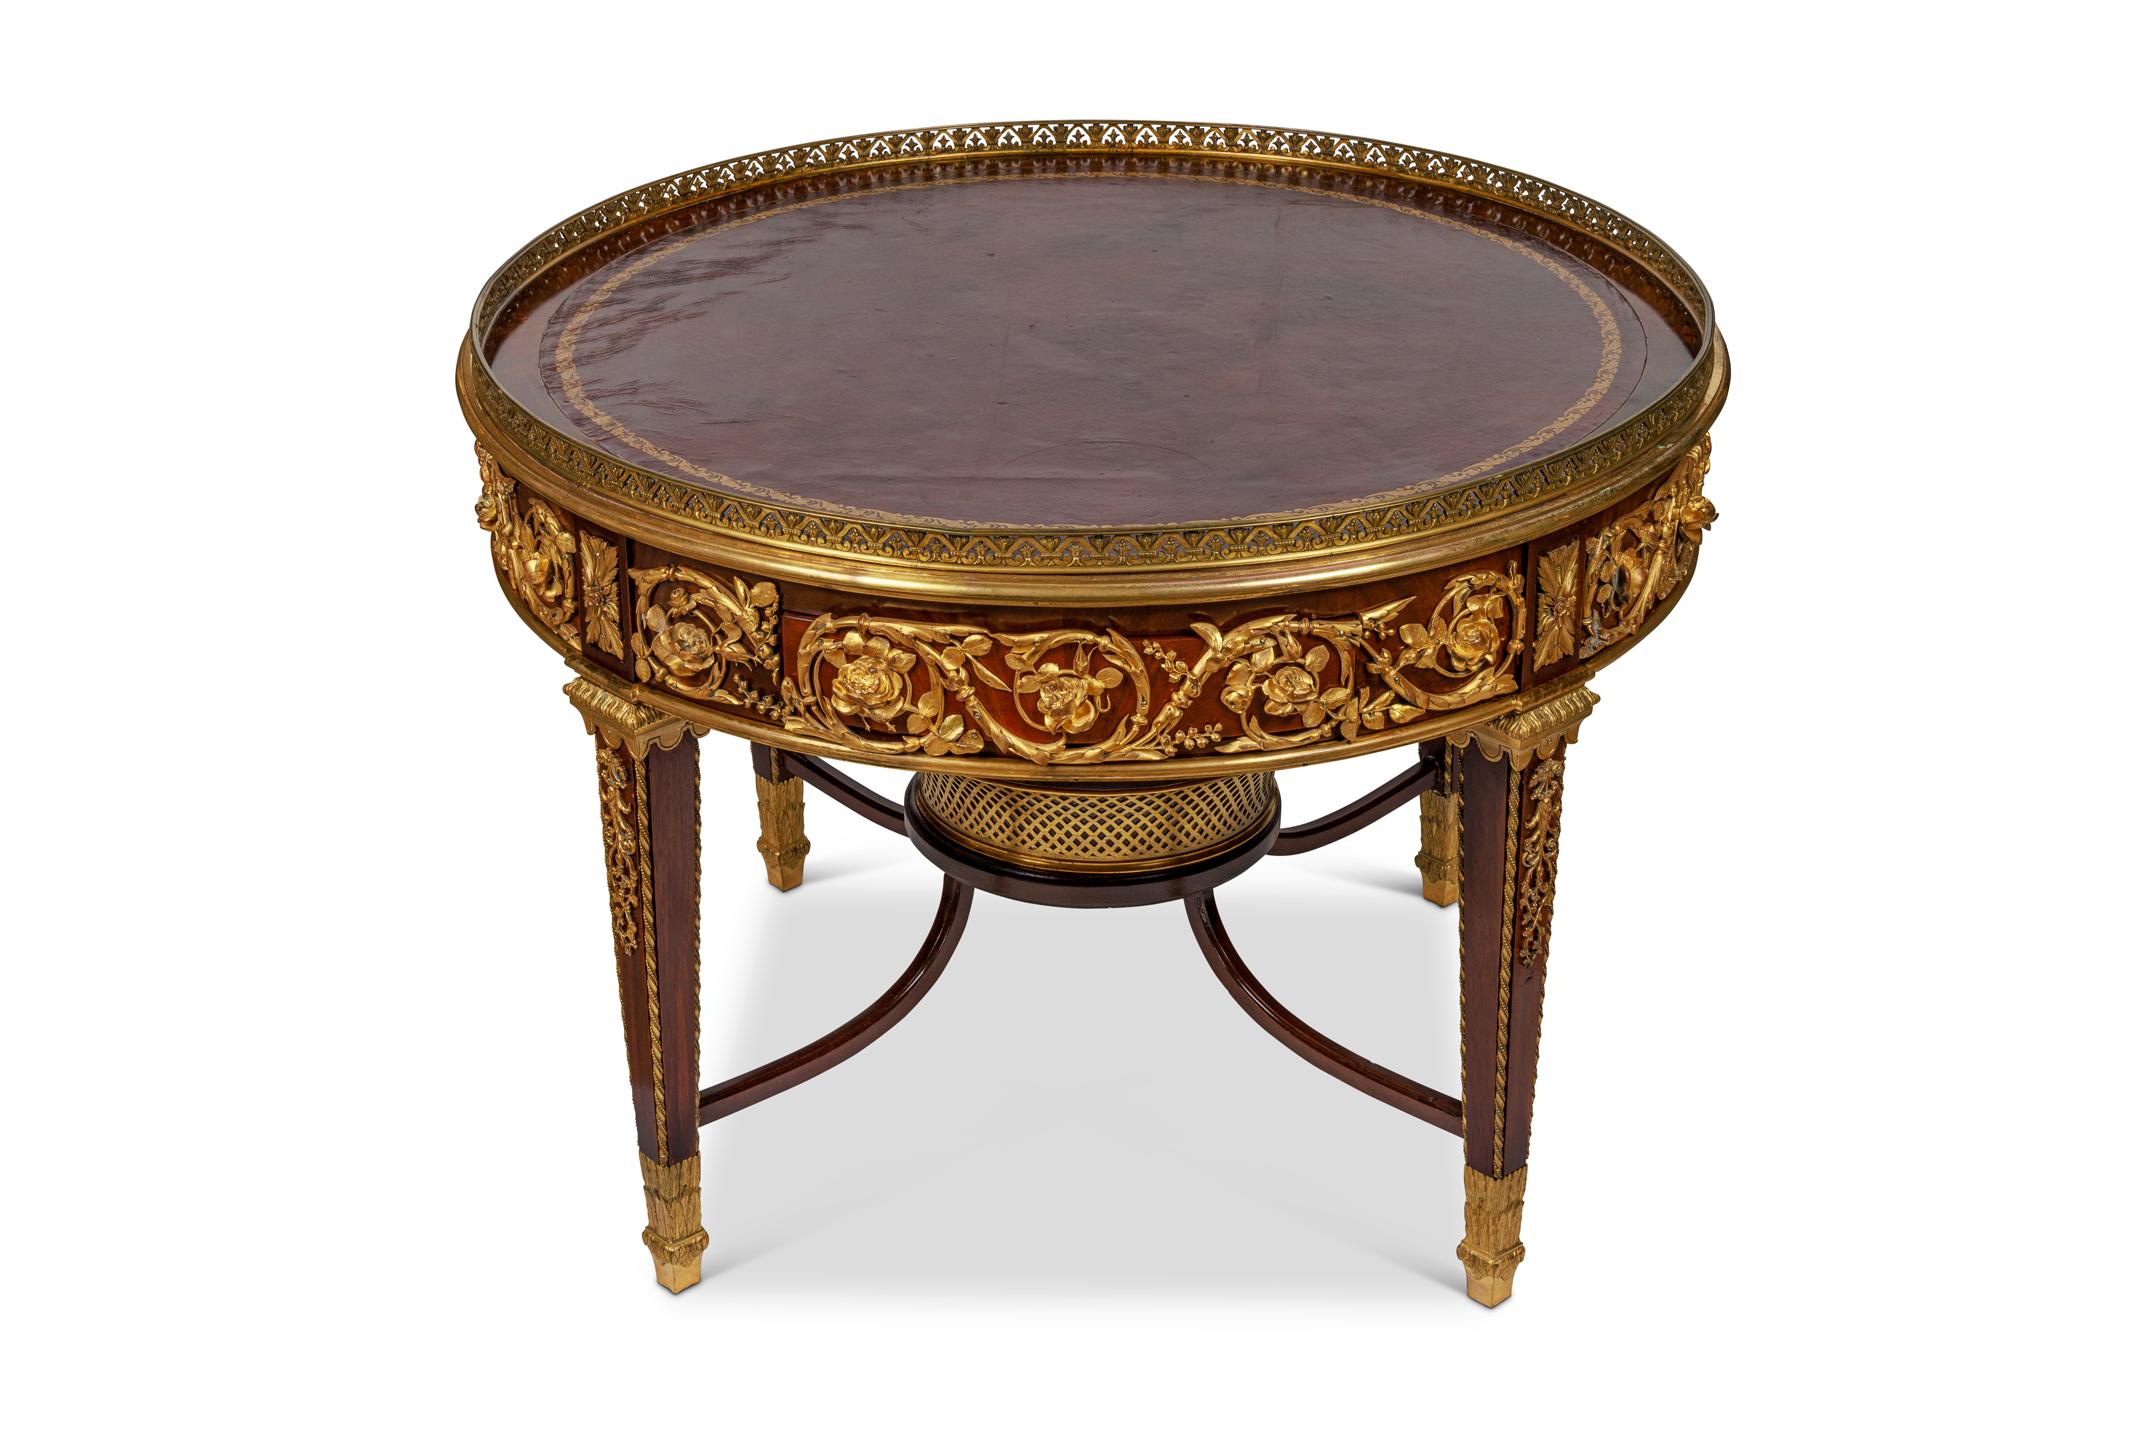 Eine außergewöhnliche Qualität Louis XVI-Stil Französisch ormolu montiert Mahagoni und Leder Kaffee-Center-Tabelle, zugeschrieben Francois Linke, Paris, um 1880.

Mit Ormolu-Beschlägen von außergewöhnlicher Qualität. 

Hat zwei Schubladen und